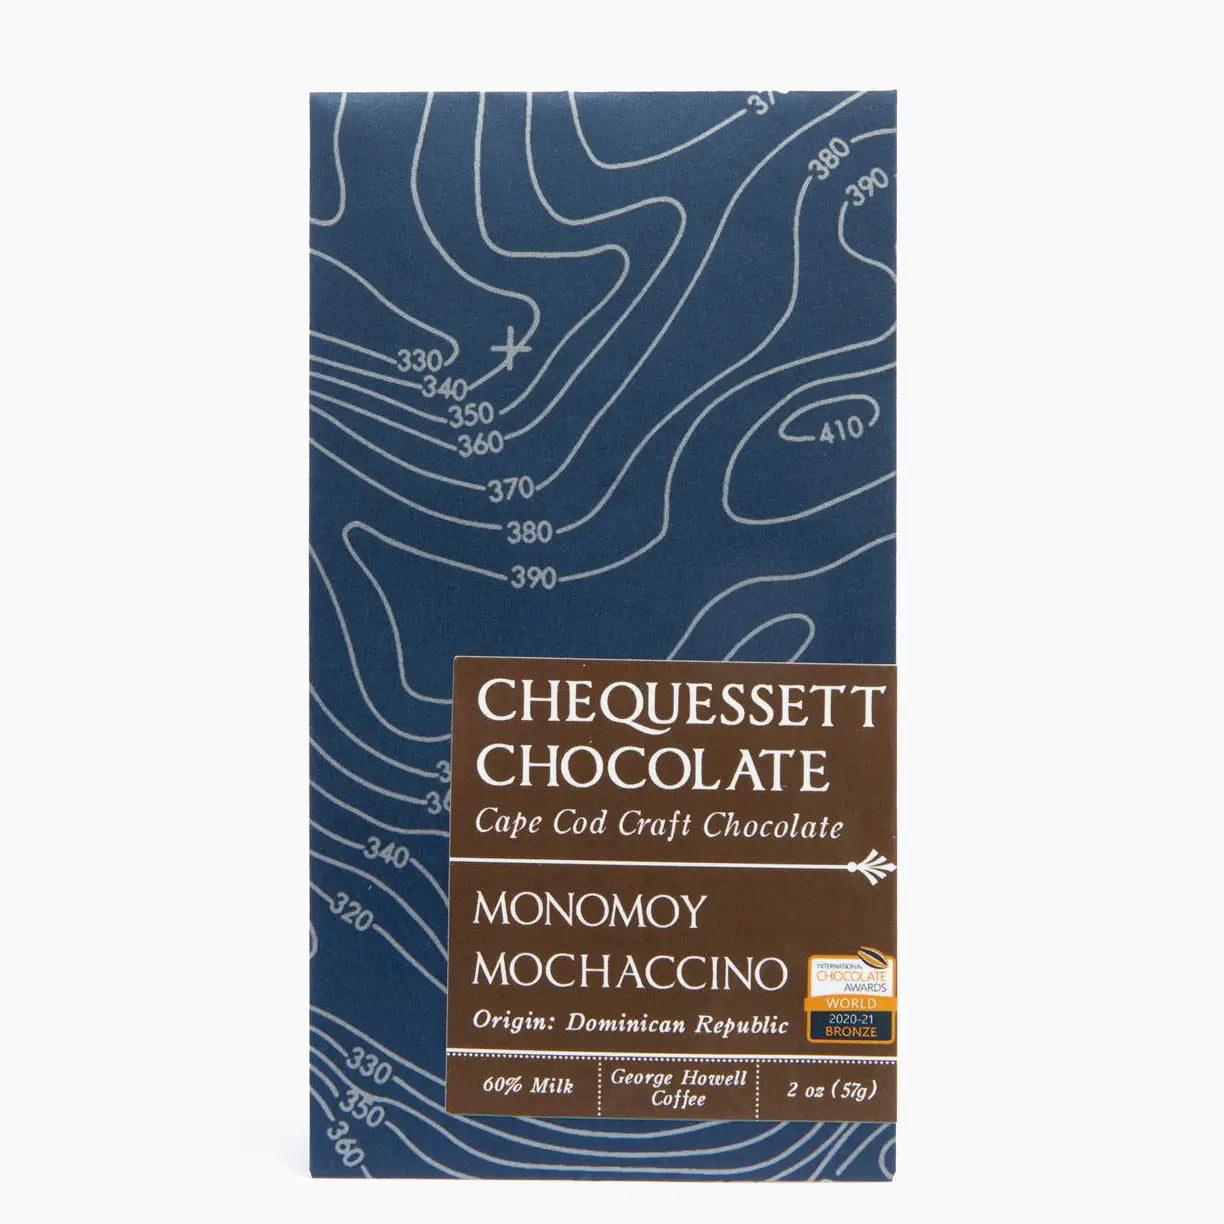 Chequessett Chocolate - Monomoy Mochaccino